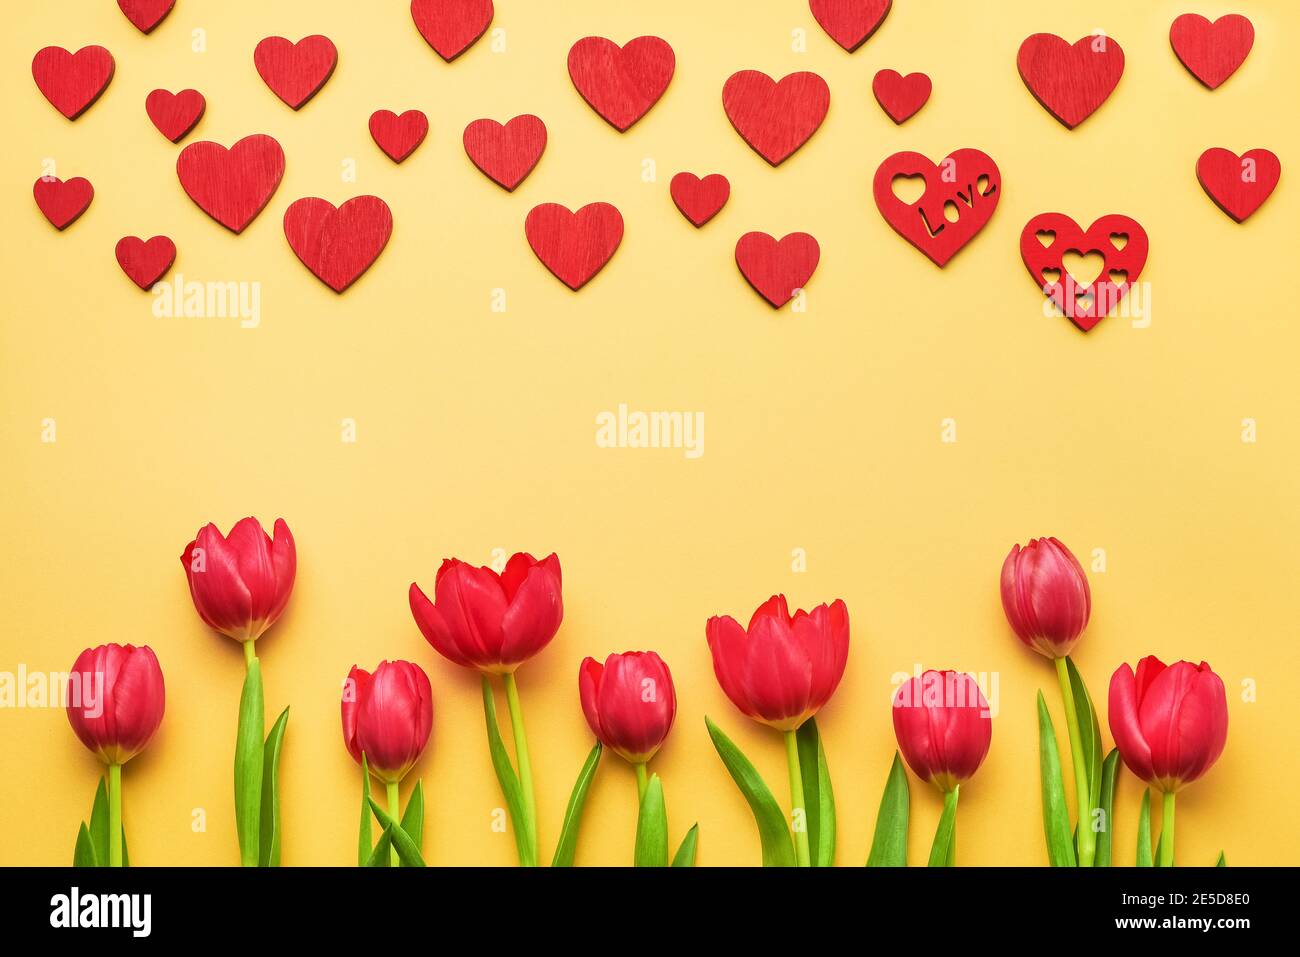 Tarjeta de felicitación para San Valentín. Ramo de tulipanes rojos y corazones rojos sobre fondo amarillo Foto de stock